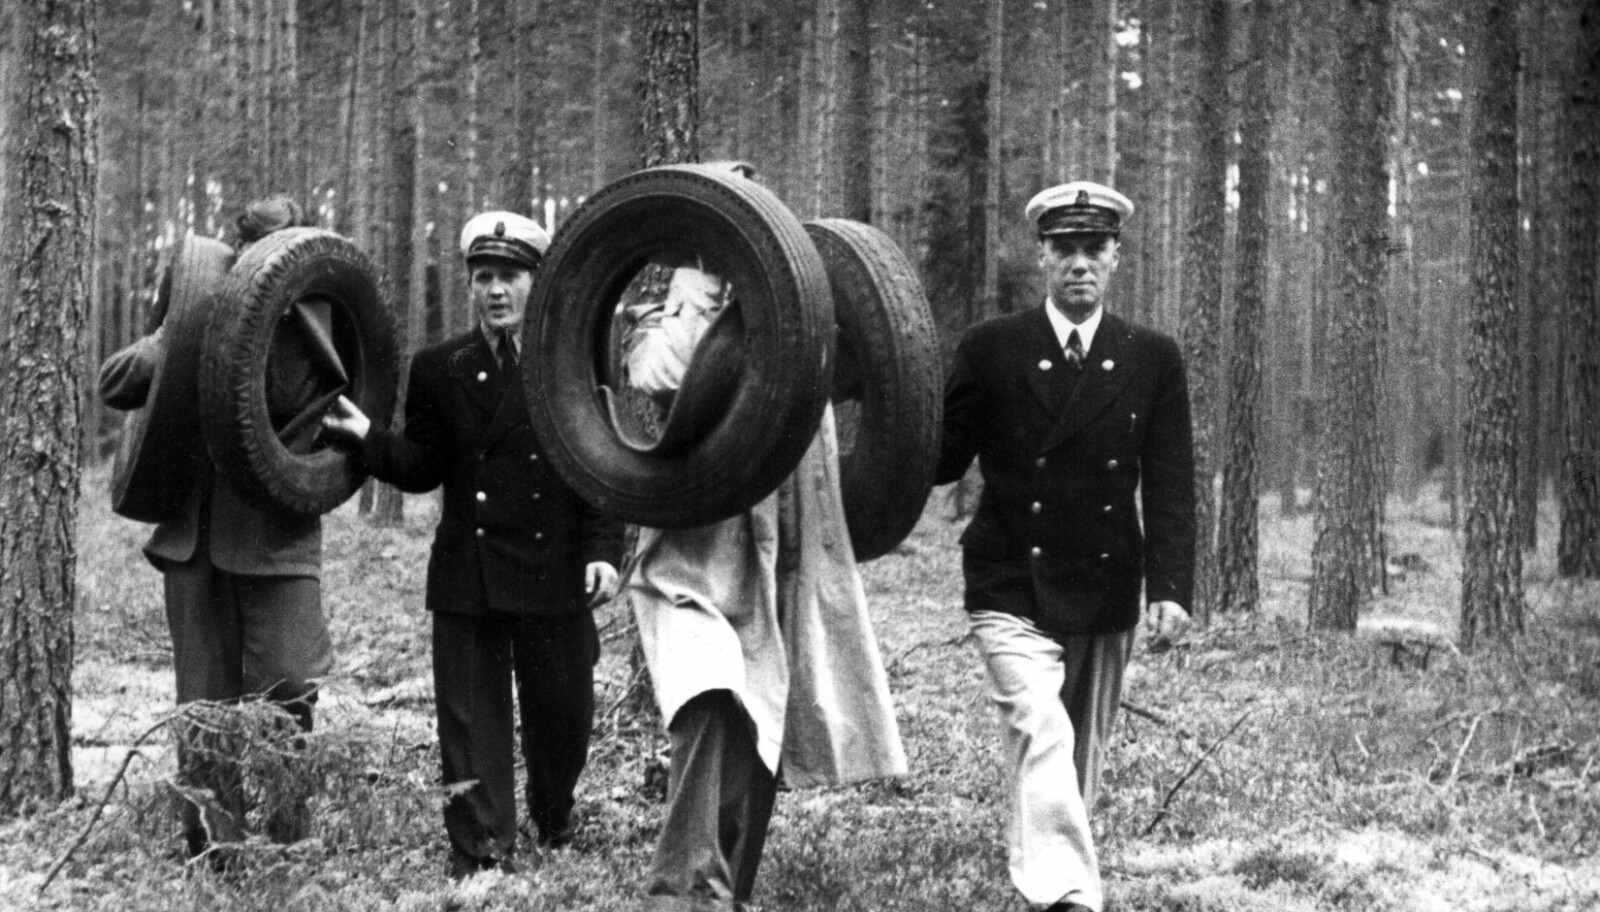 <b>DEKK-SMUGLING:</b> Bildekk var ettertraktet i Norge - og Sverige kunne tilby både billige og gode sådanne. Her er svenske smuglere  på vei inn i Norge i 1952 med bildekk tatt av tollerne ! (Foto: NTB Scanpix).